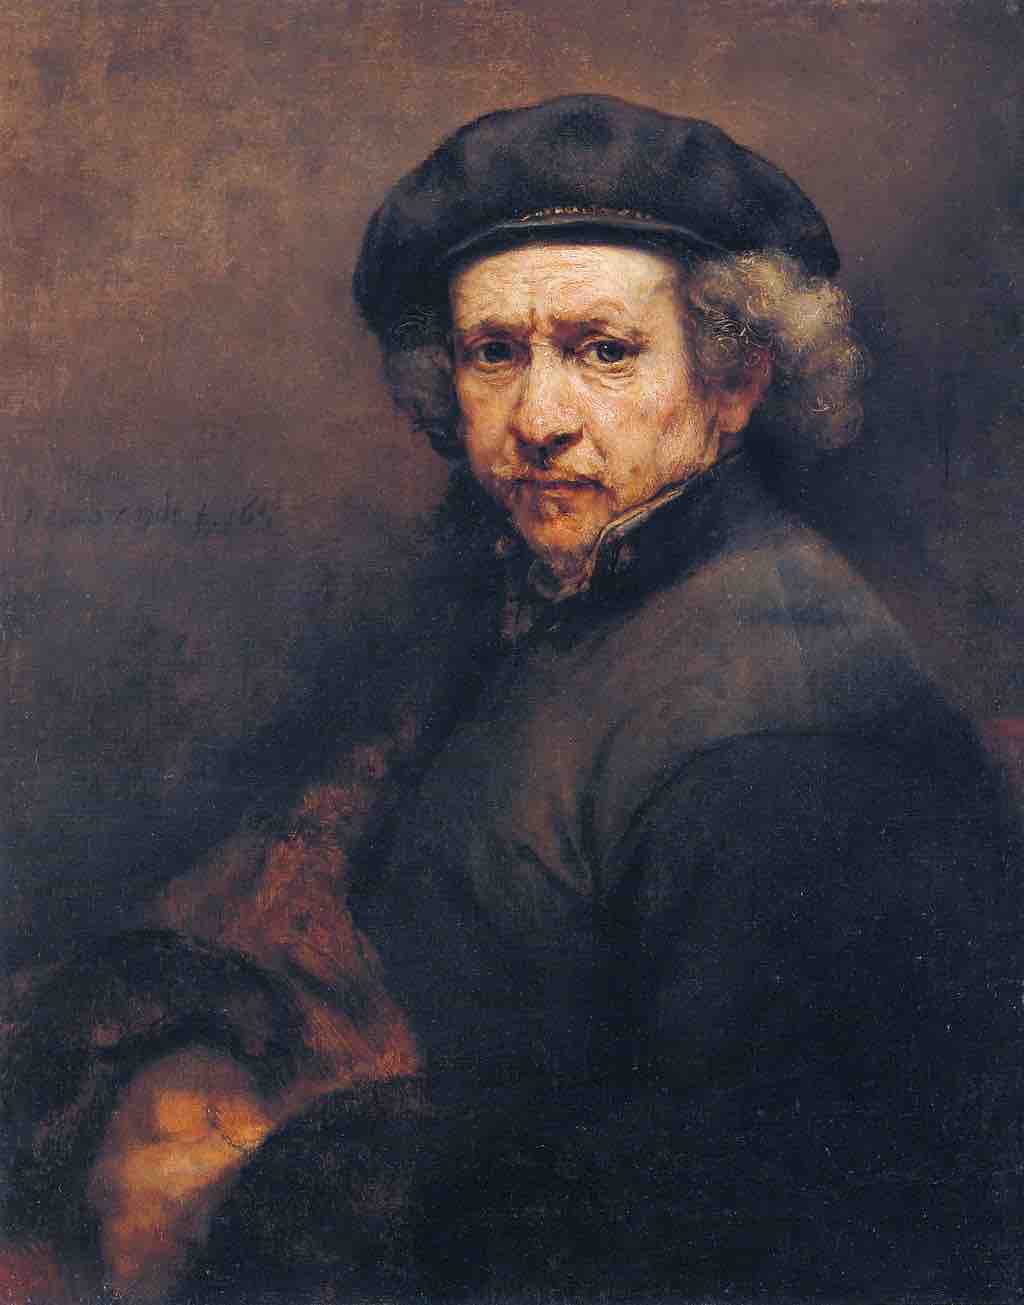 <em>Self-portrait</em> by Rembrandt, 1659